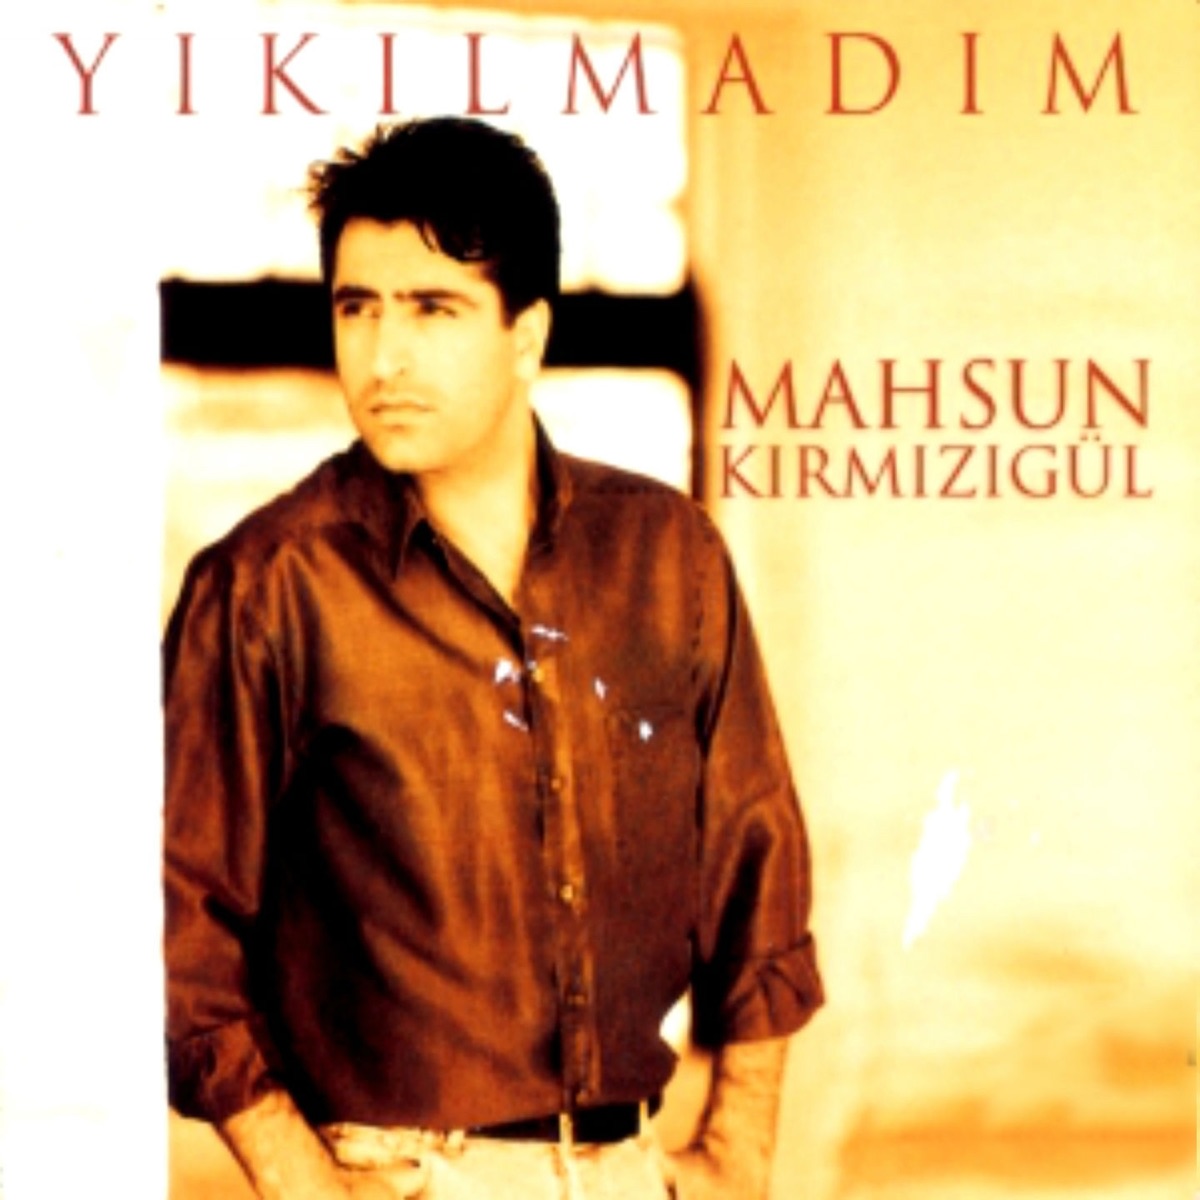 Yıkılmadım - Album by Mahsun Kirmizigül - Apple Music